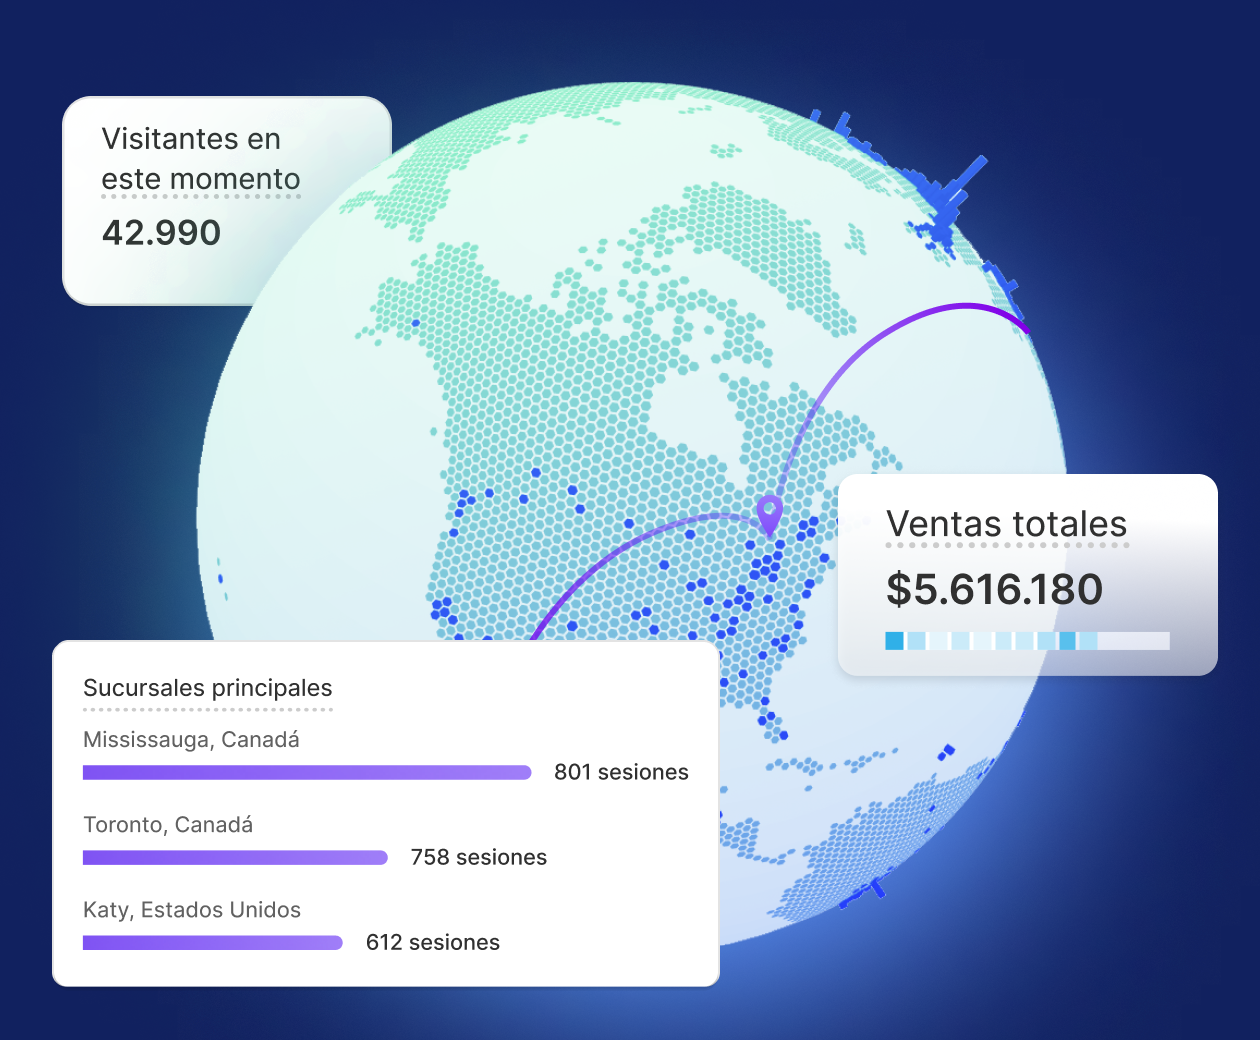 Un collage de imágenes de la pantalla Vista en tiempo real muestra el globo terráqueo, las principales ubicaciones, las ventas totales y los módulos de visitantes en ese momento.